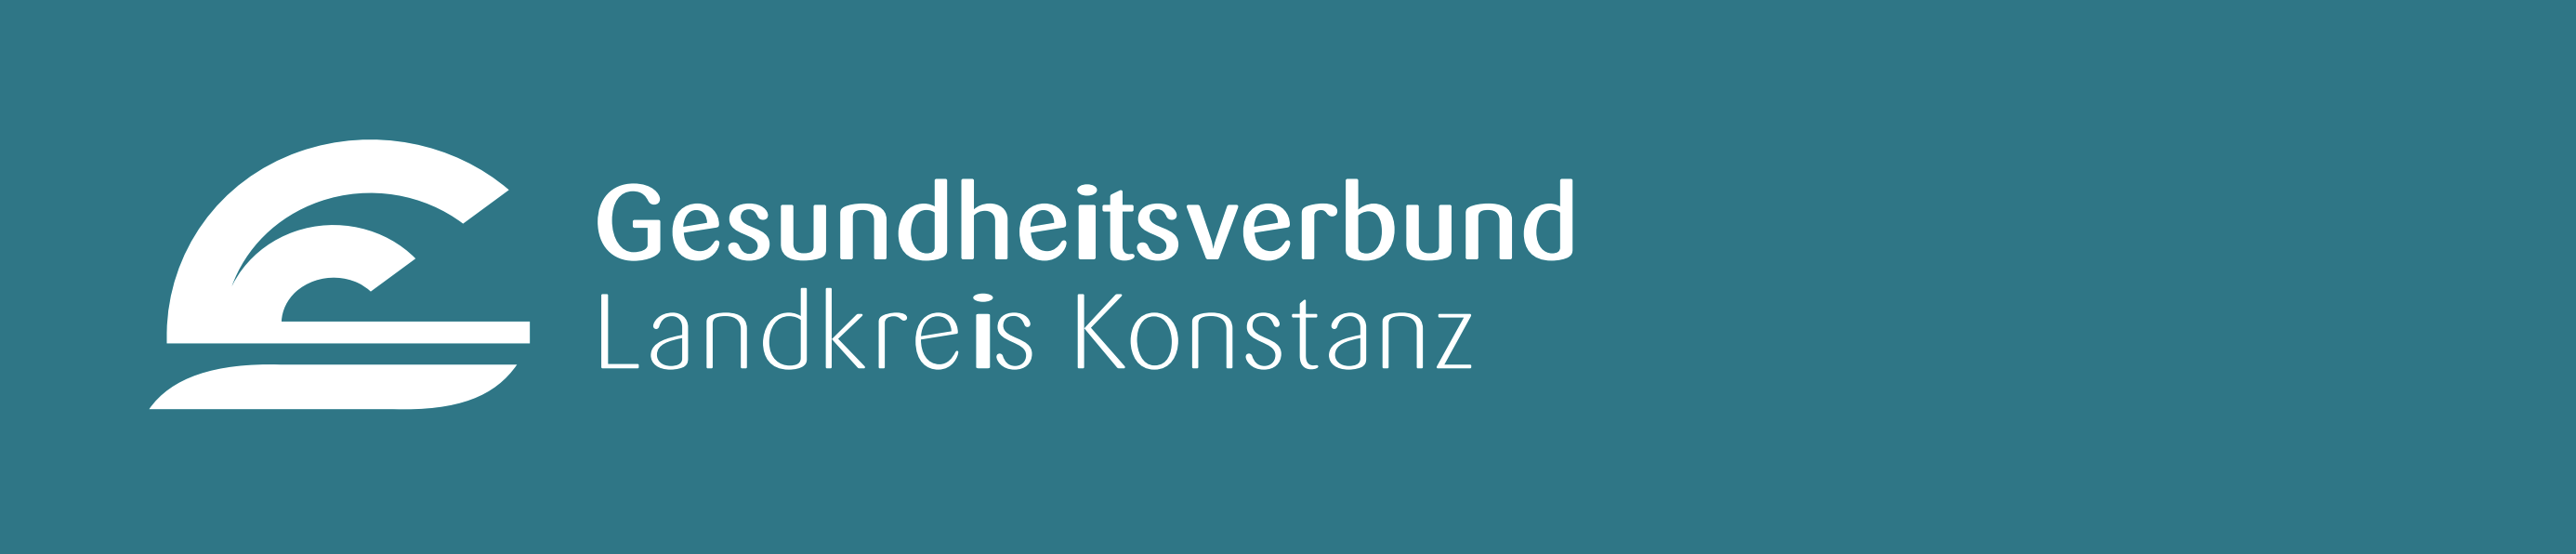 Gesundheitsverbund Landkreis Konstanz.